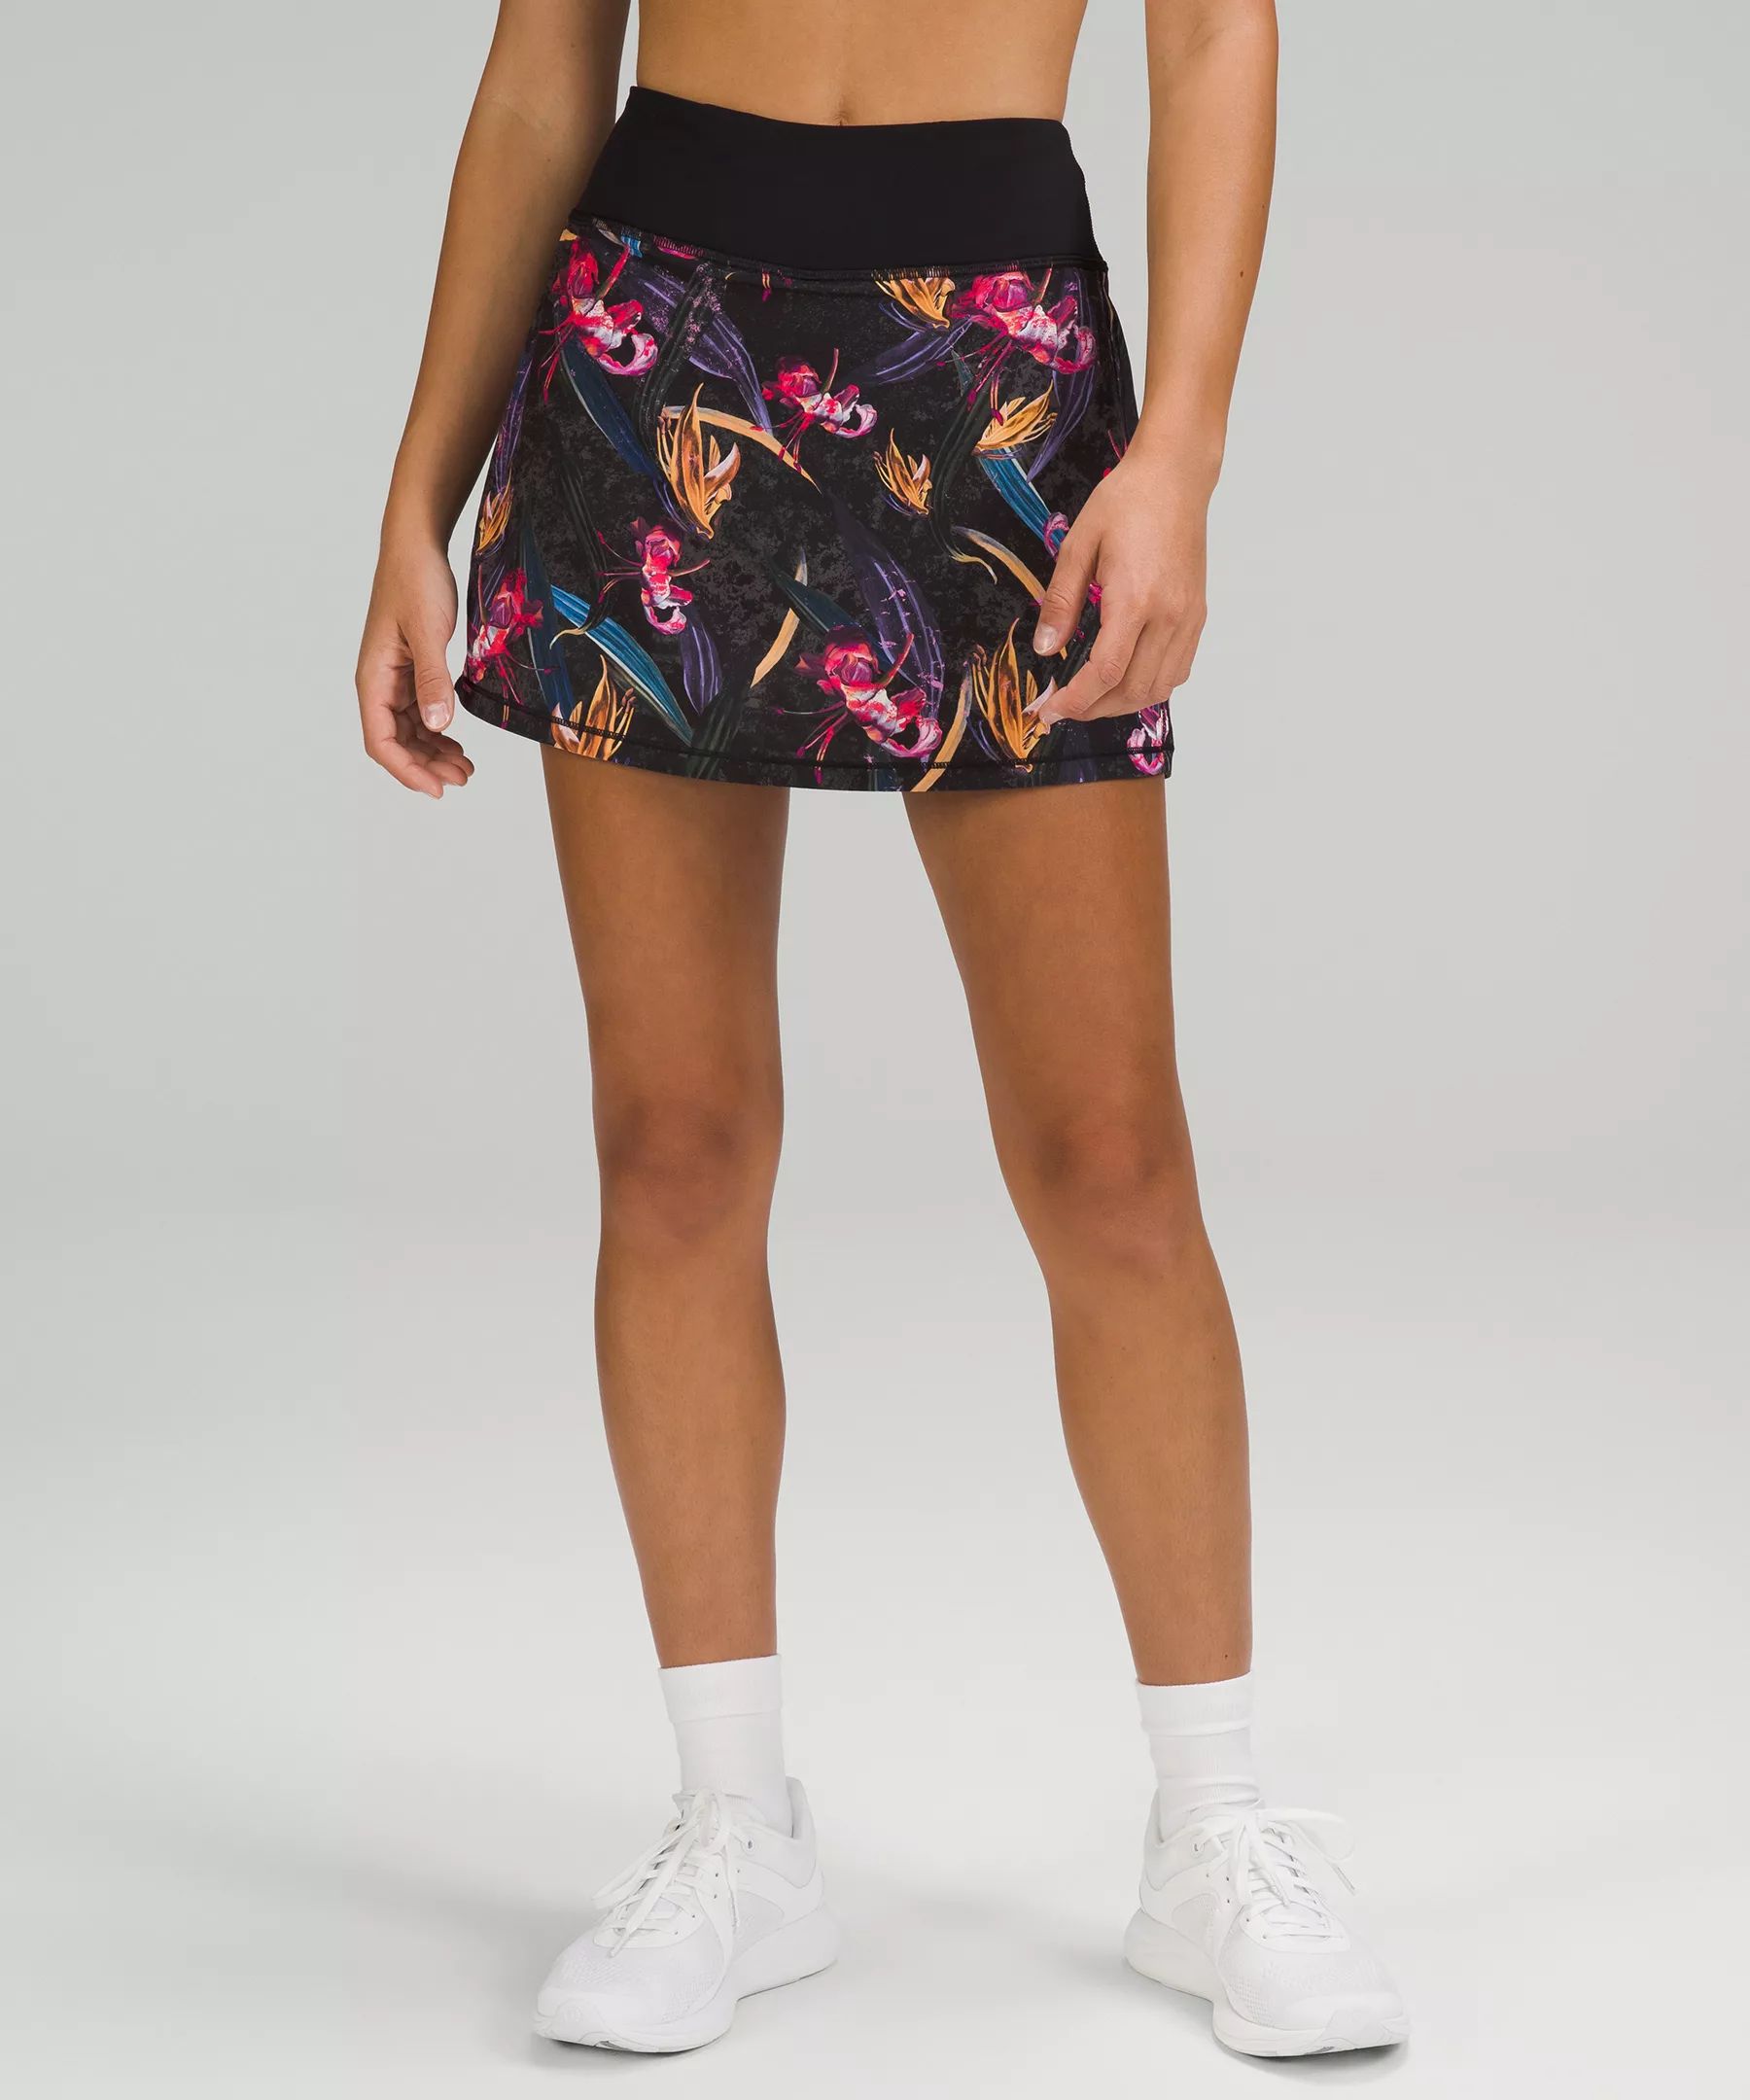 Pace Rival Mid-Rise Skirt Long | Lululemon (US)